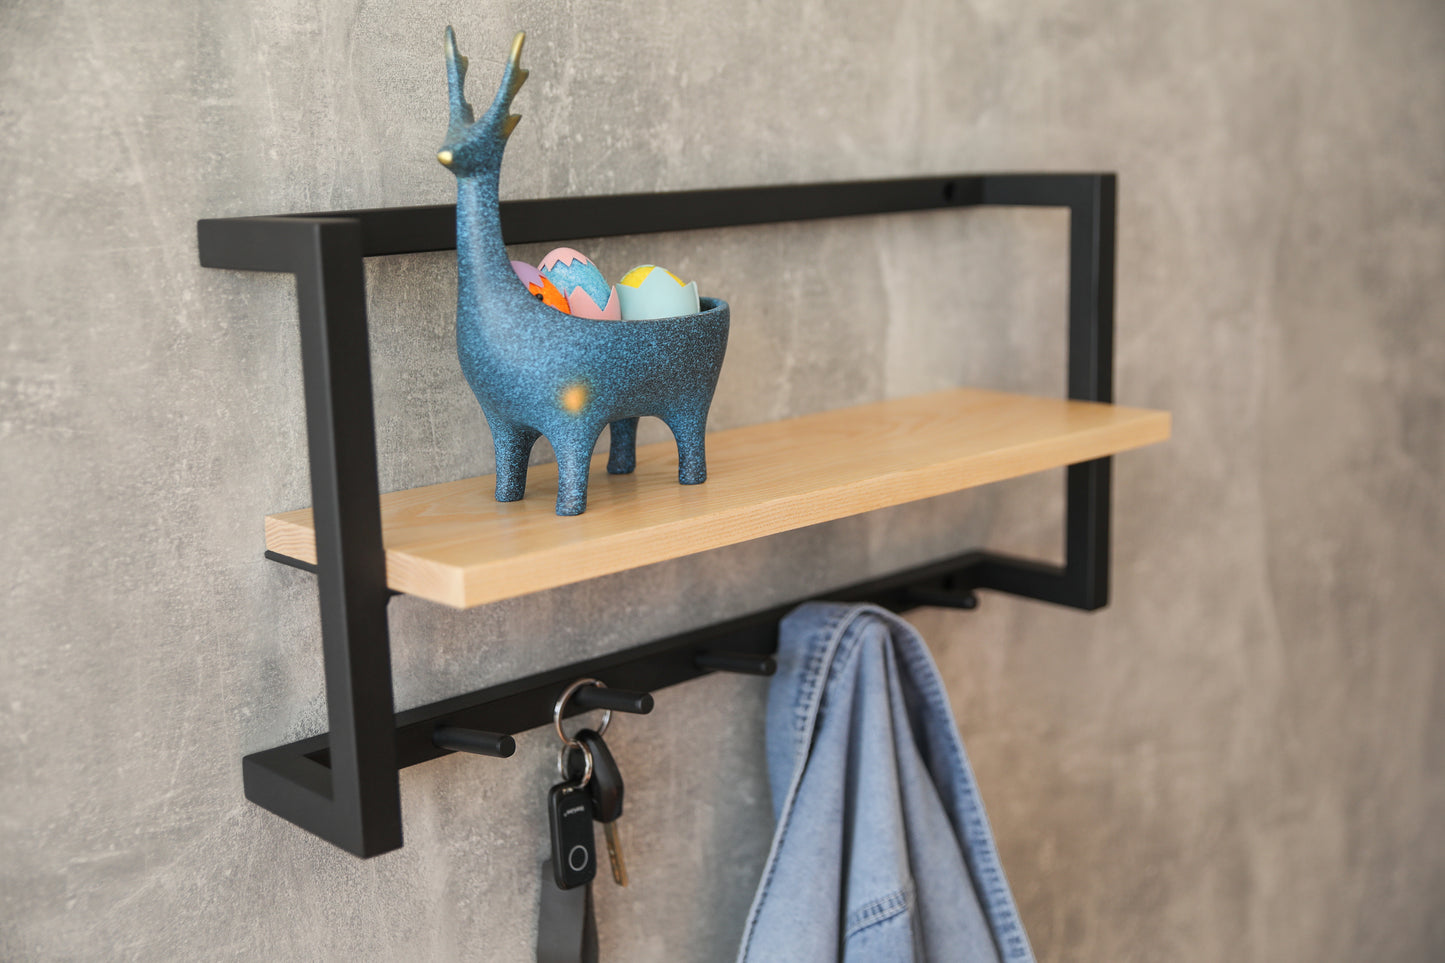 Hallway shelf holder 60x15x25 cm - "Welcome Shelf"